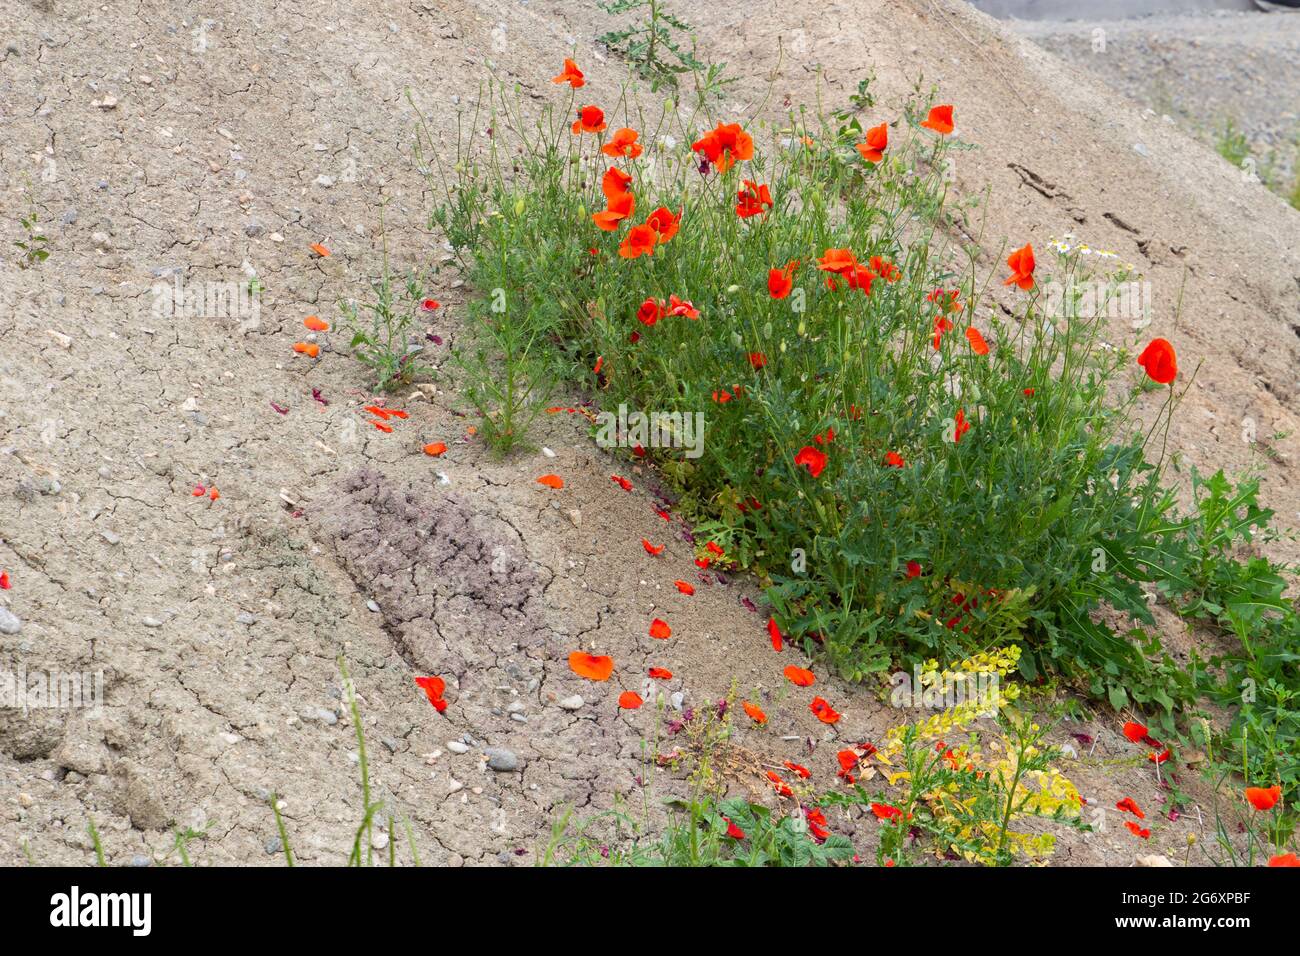 Roter Mohn wächst auf Schutt- und Kieshaufen auf einer Baustelle Stockfoto